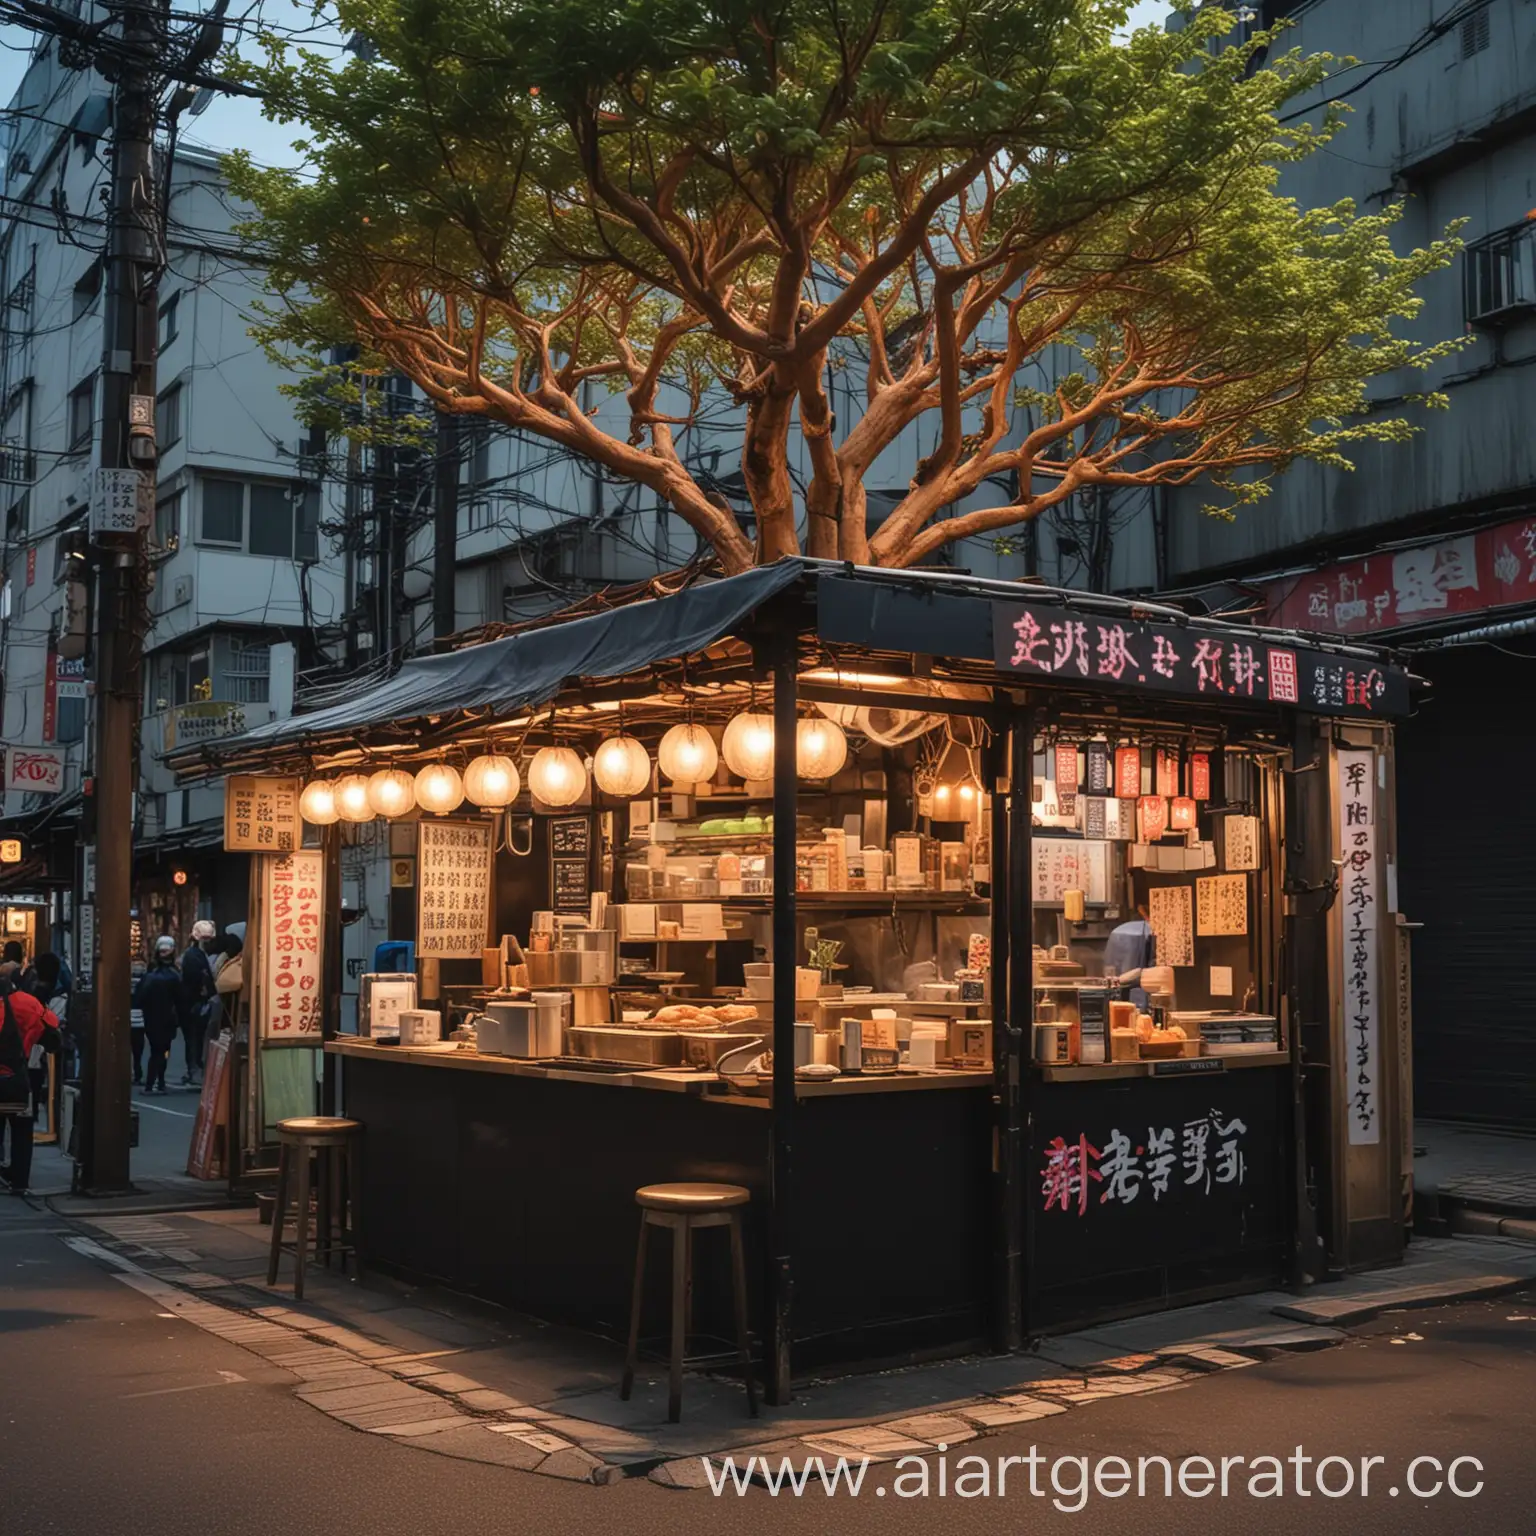 Японская уличная лавка с едой, похожий на лавку с удоном, киберпанкоские огни и дерево